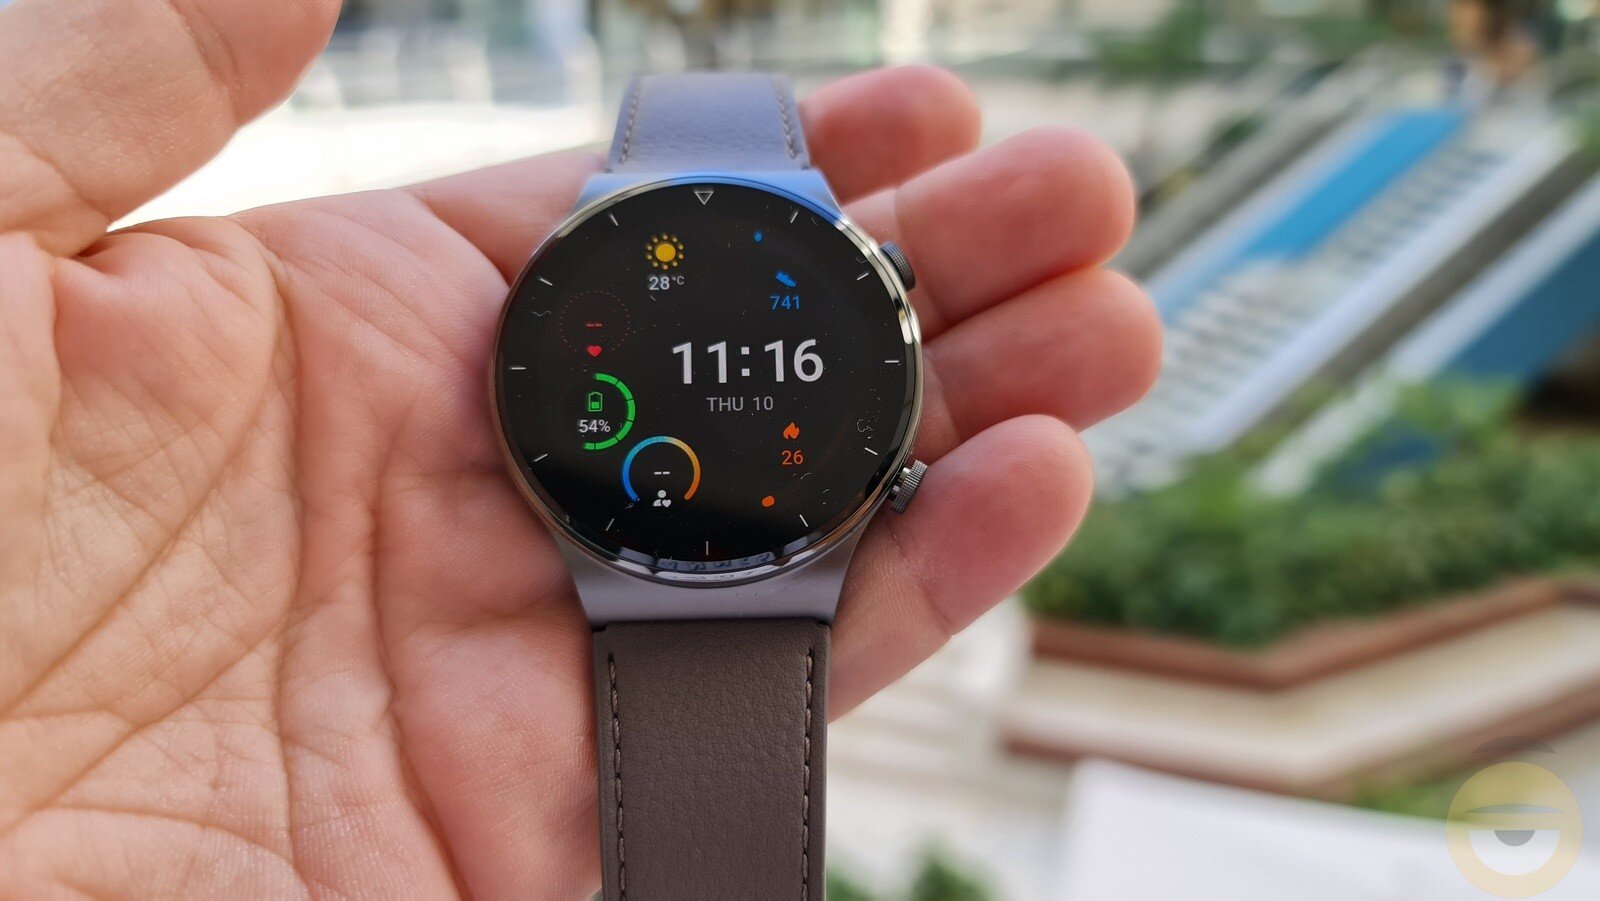 Κατασκευασμένο από premium υλικά, το Watch GT 2 Pro είναι το καλύτερο smartwatch της Huawei